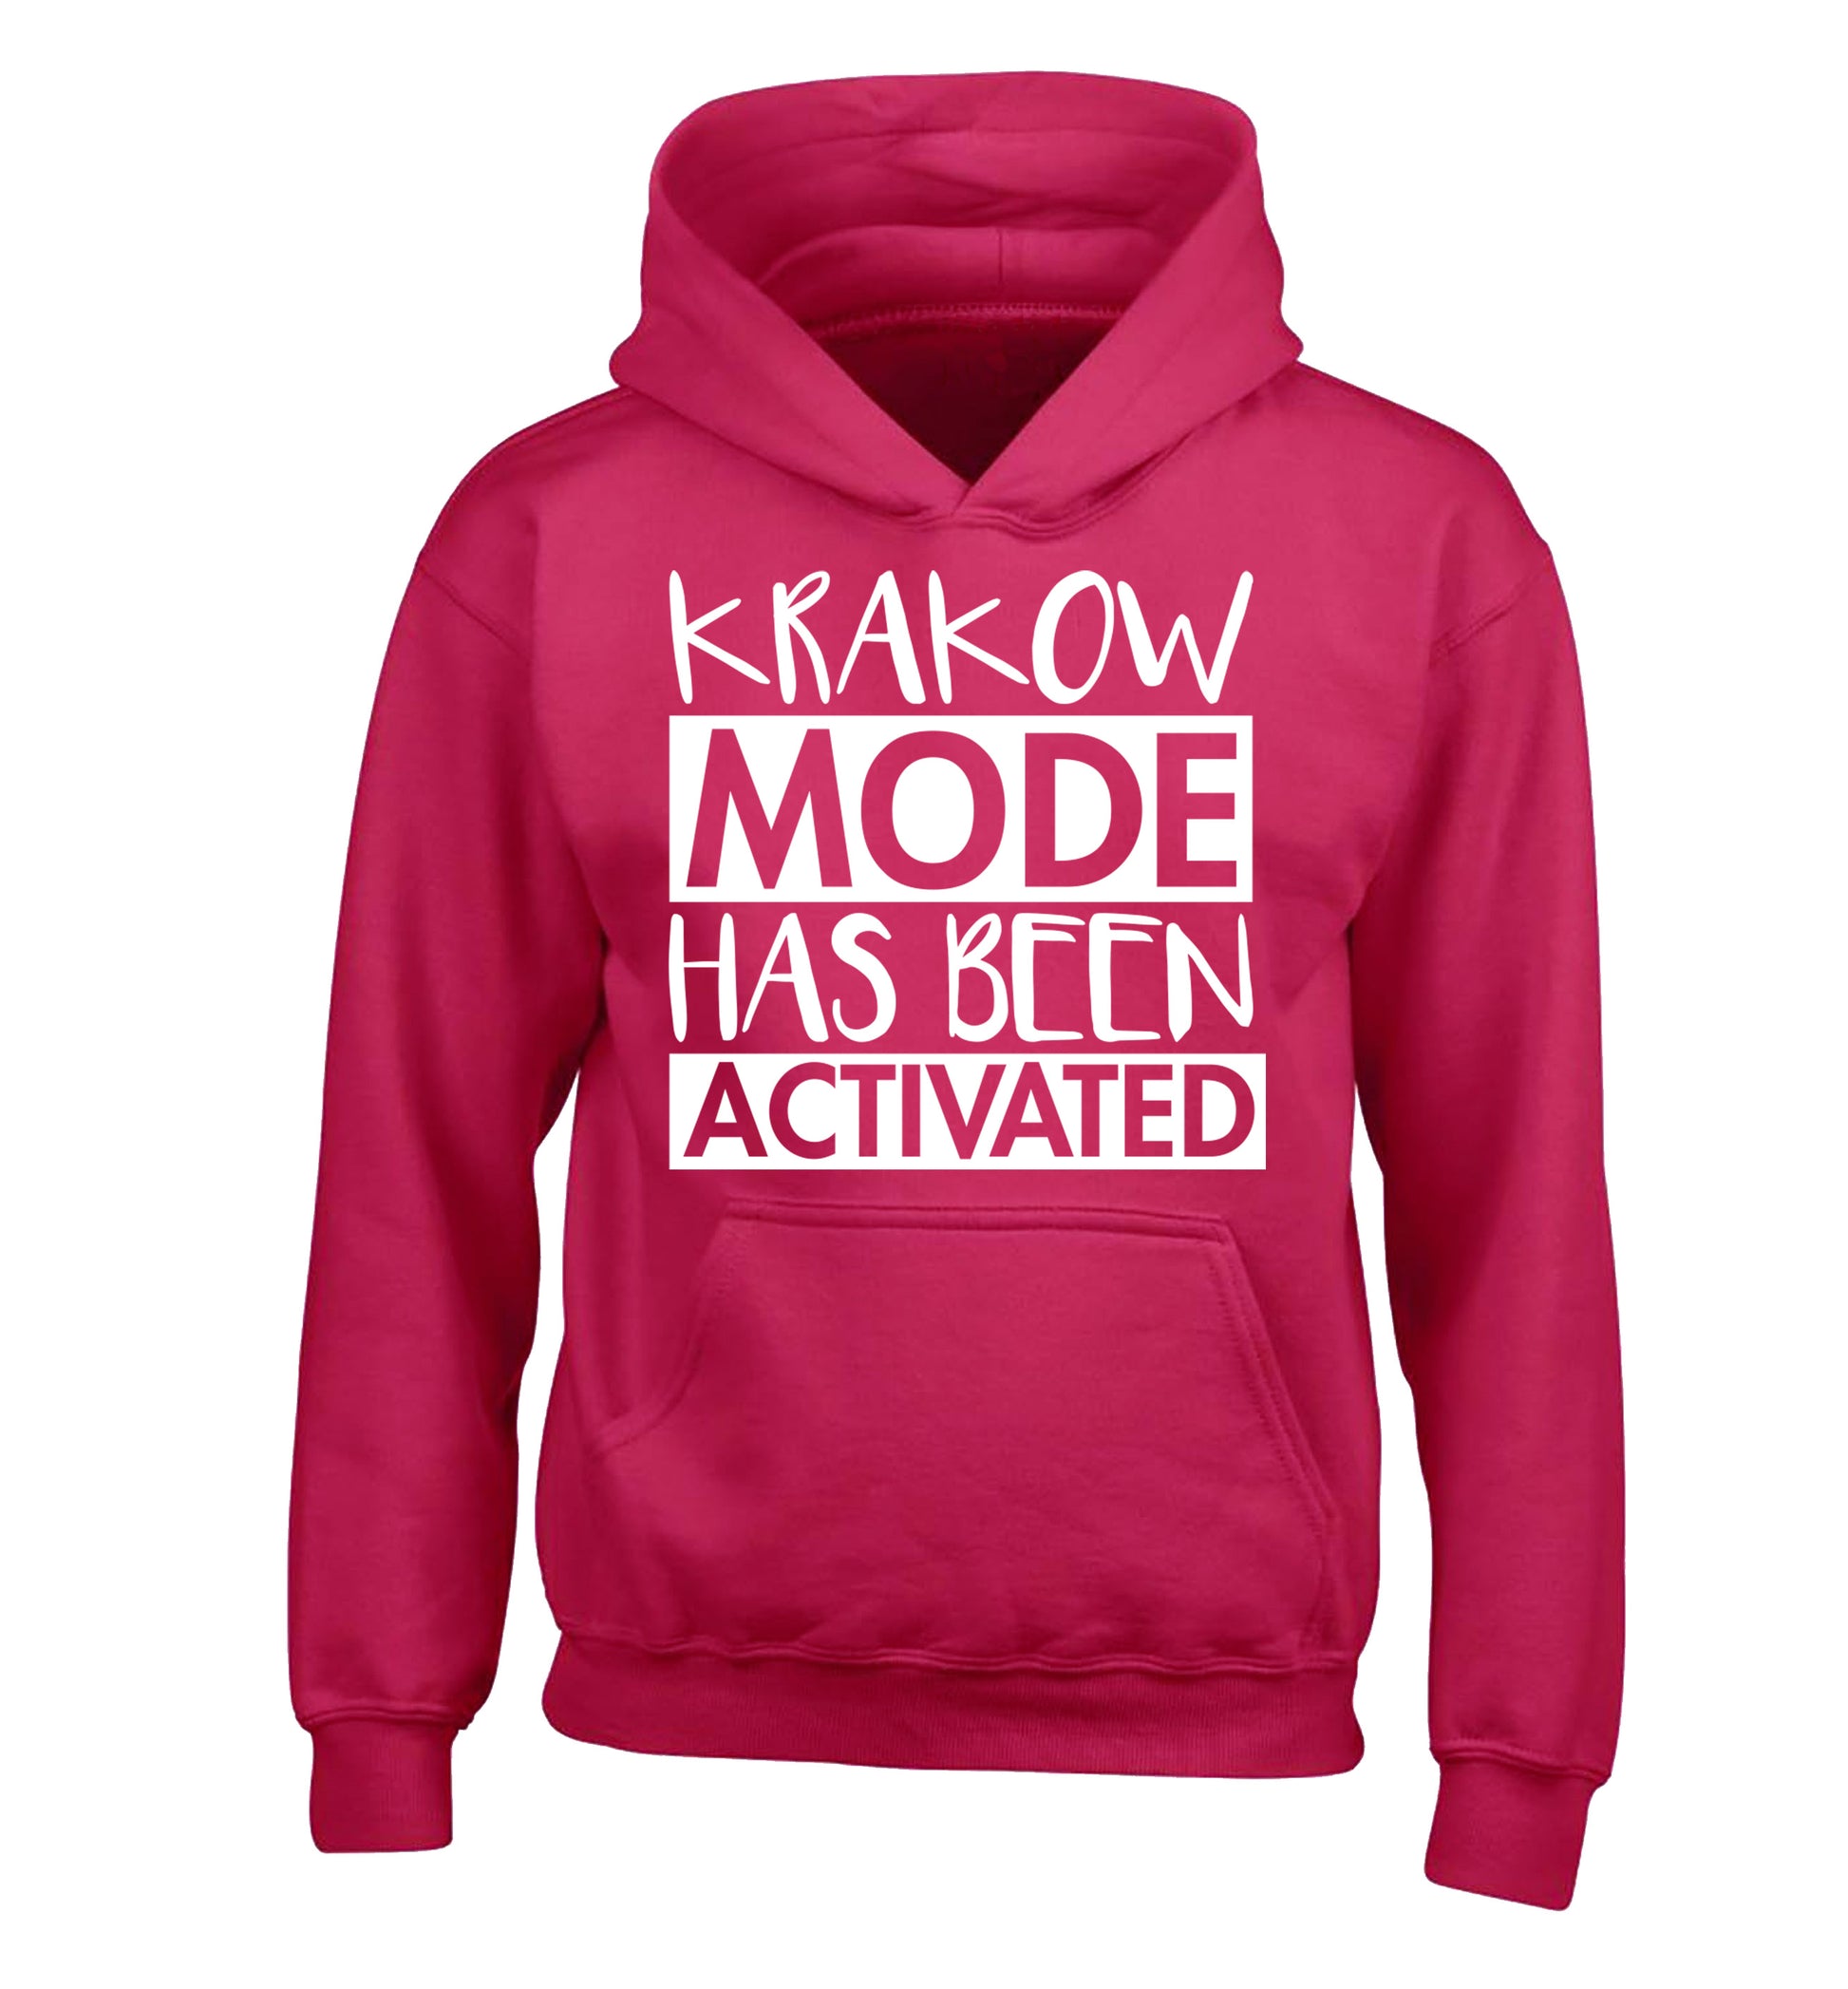 Krakow mode has been activated children's pink hoodie 12-13 Years